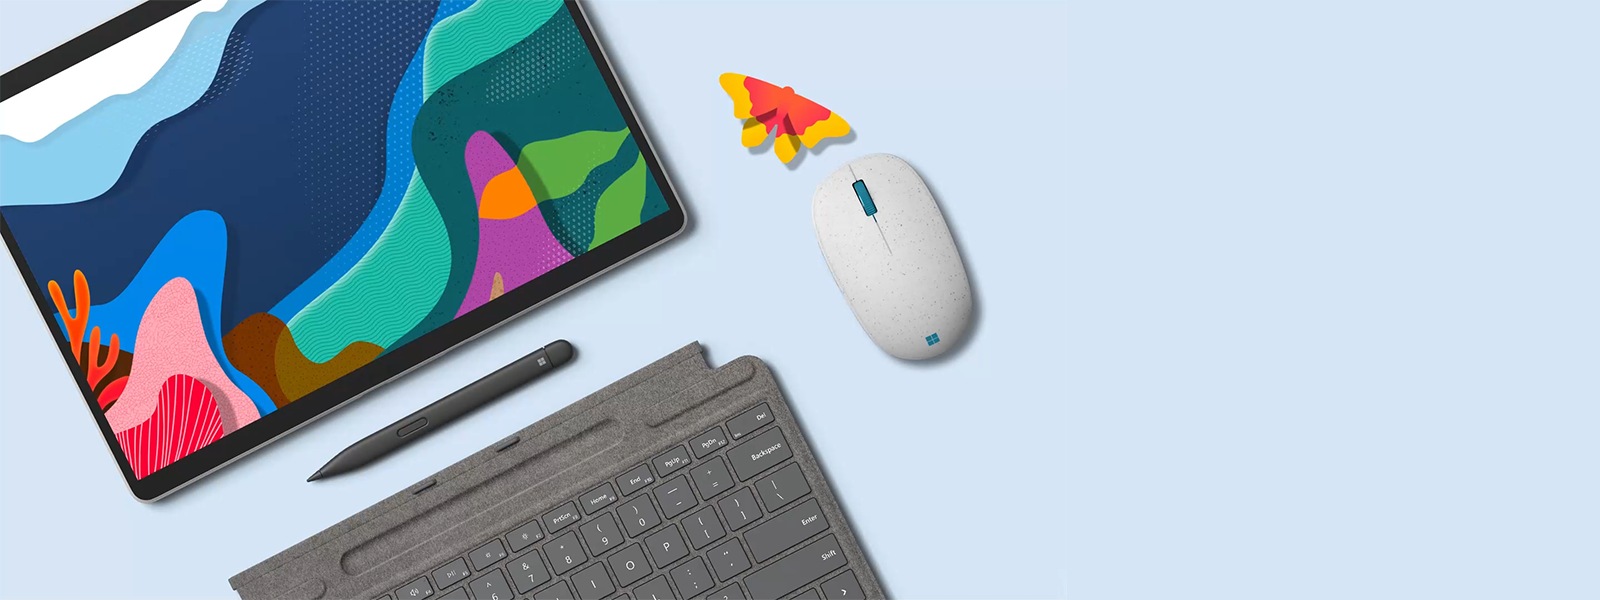 מחשב Microsoft Surface Pro 8 עם עט דק ועם עכבר Microsoft Ocean Plastic Mouse עם ערכת נושא של "יום כדור הארץ"